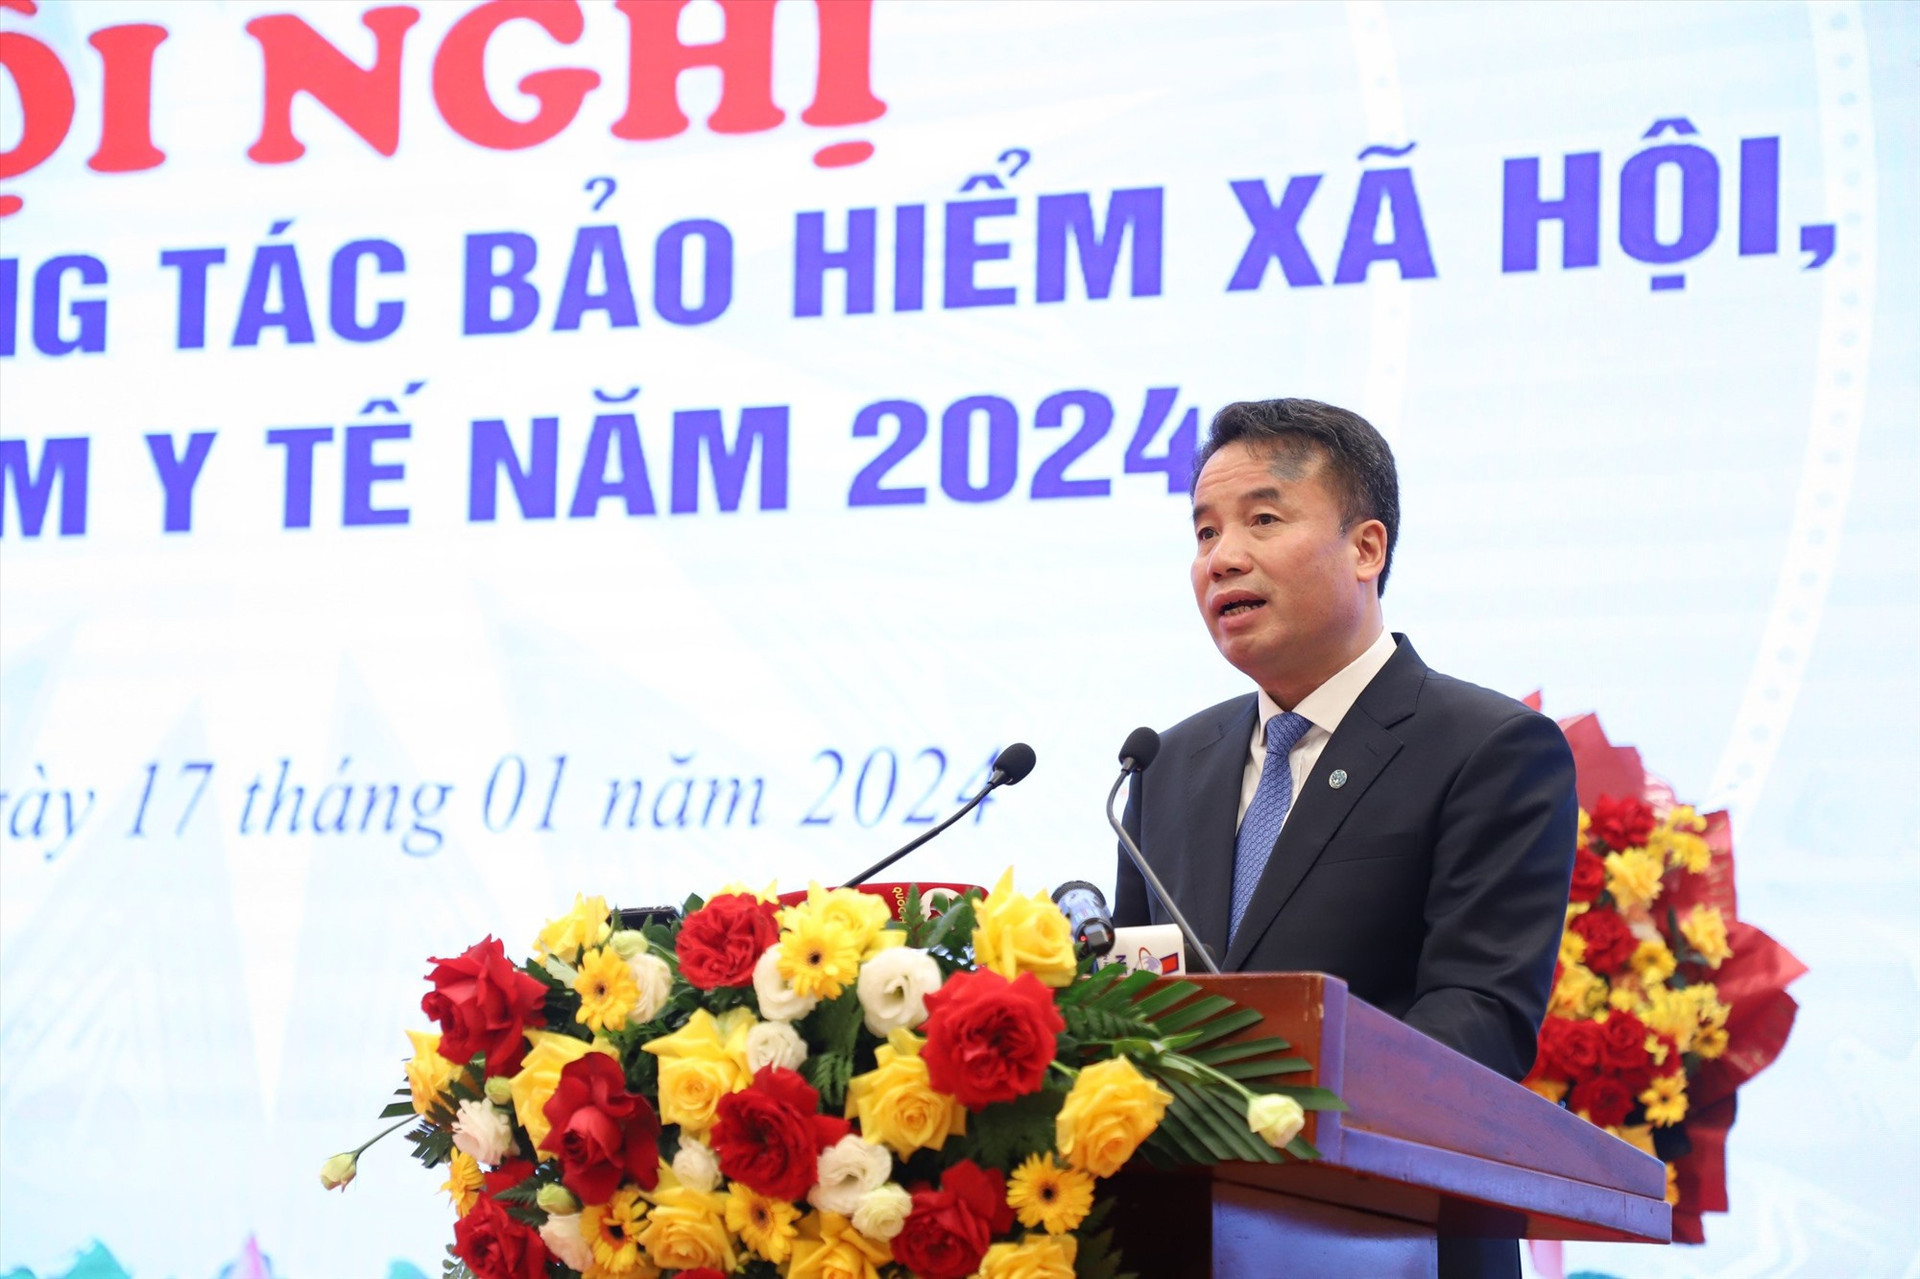 Tổng Giám đốc BHXH Việt Nam Nguyễn Thế Mạnh khai mạc hội nghị trực tuyến toàn quốc.